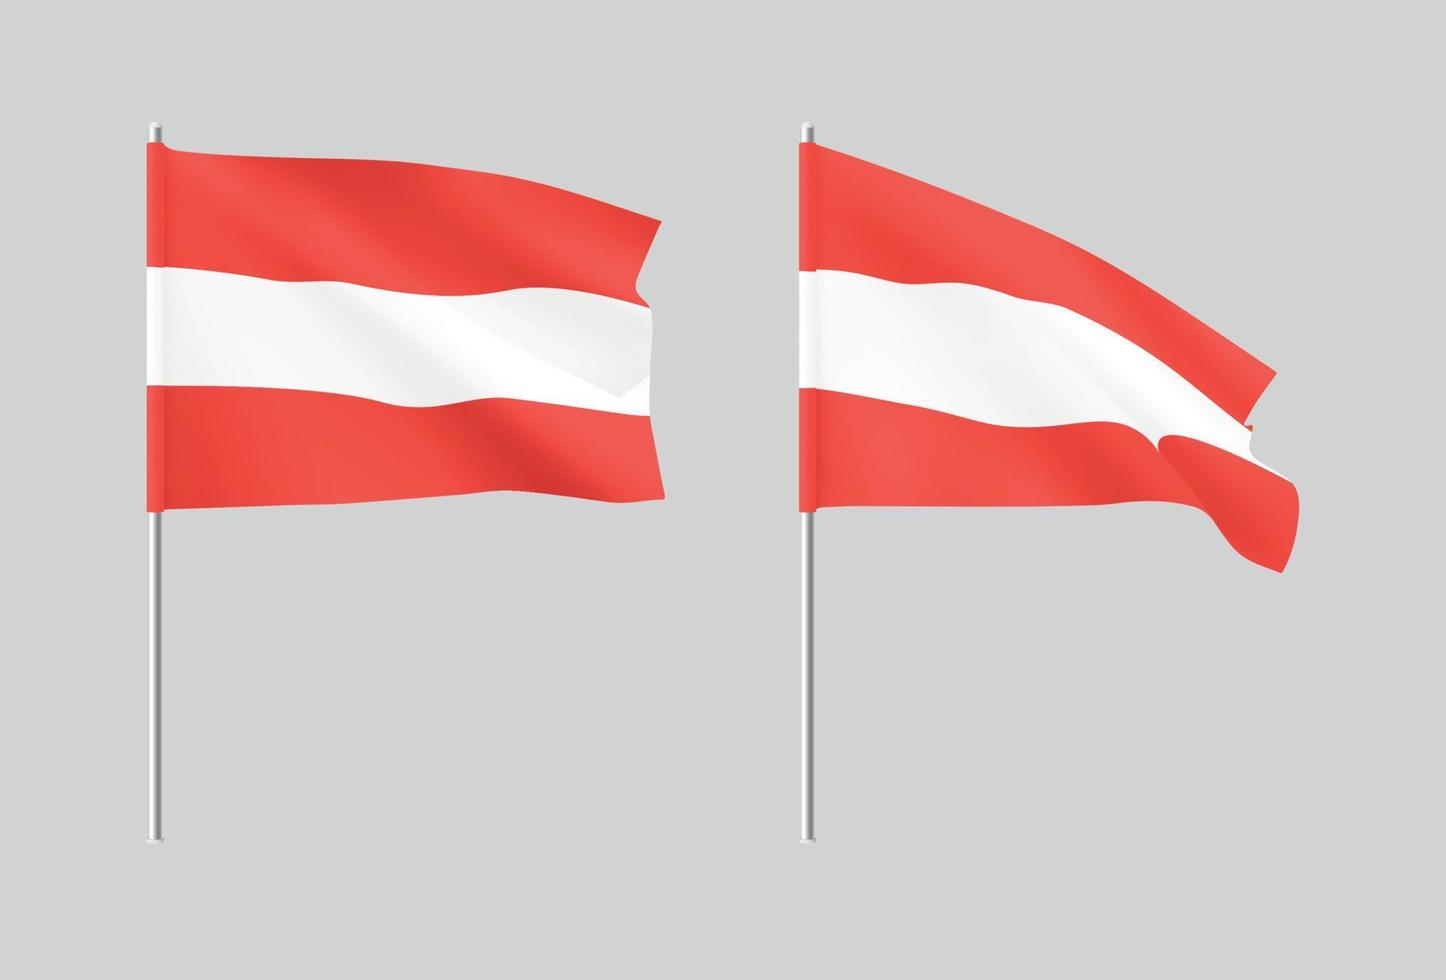 bandeiras da Áustria. conjunto de bandeiras realistas nacionais áustria. vetor